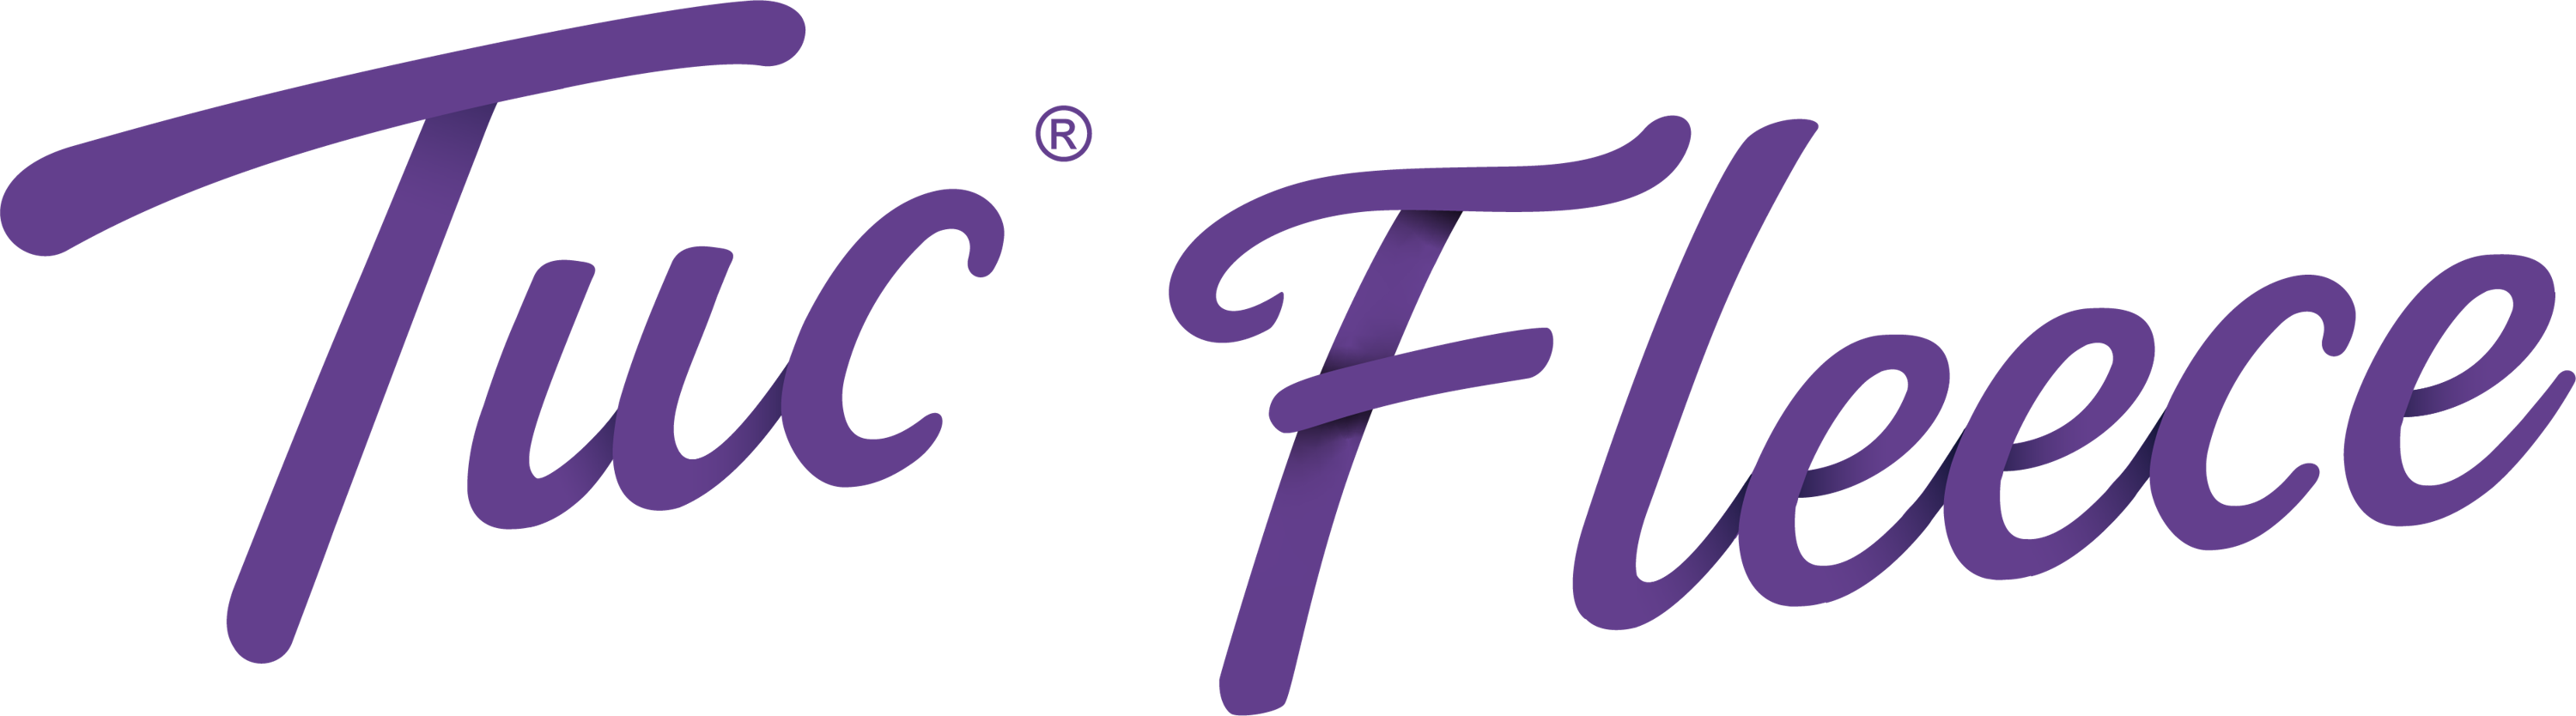 Tuc Fleece Logo